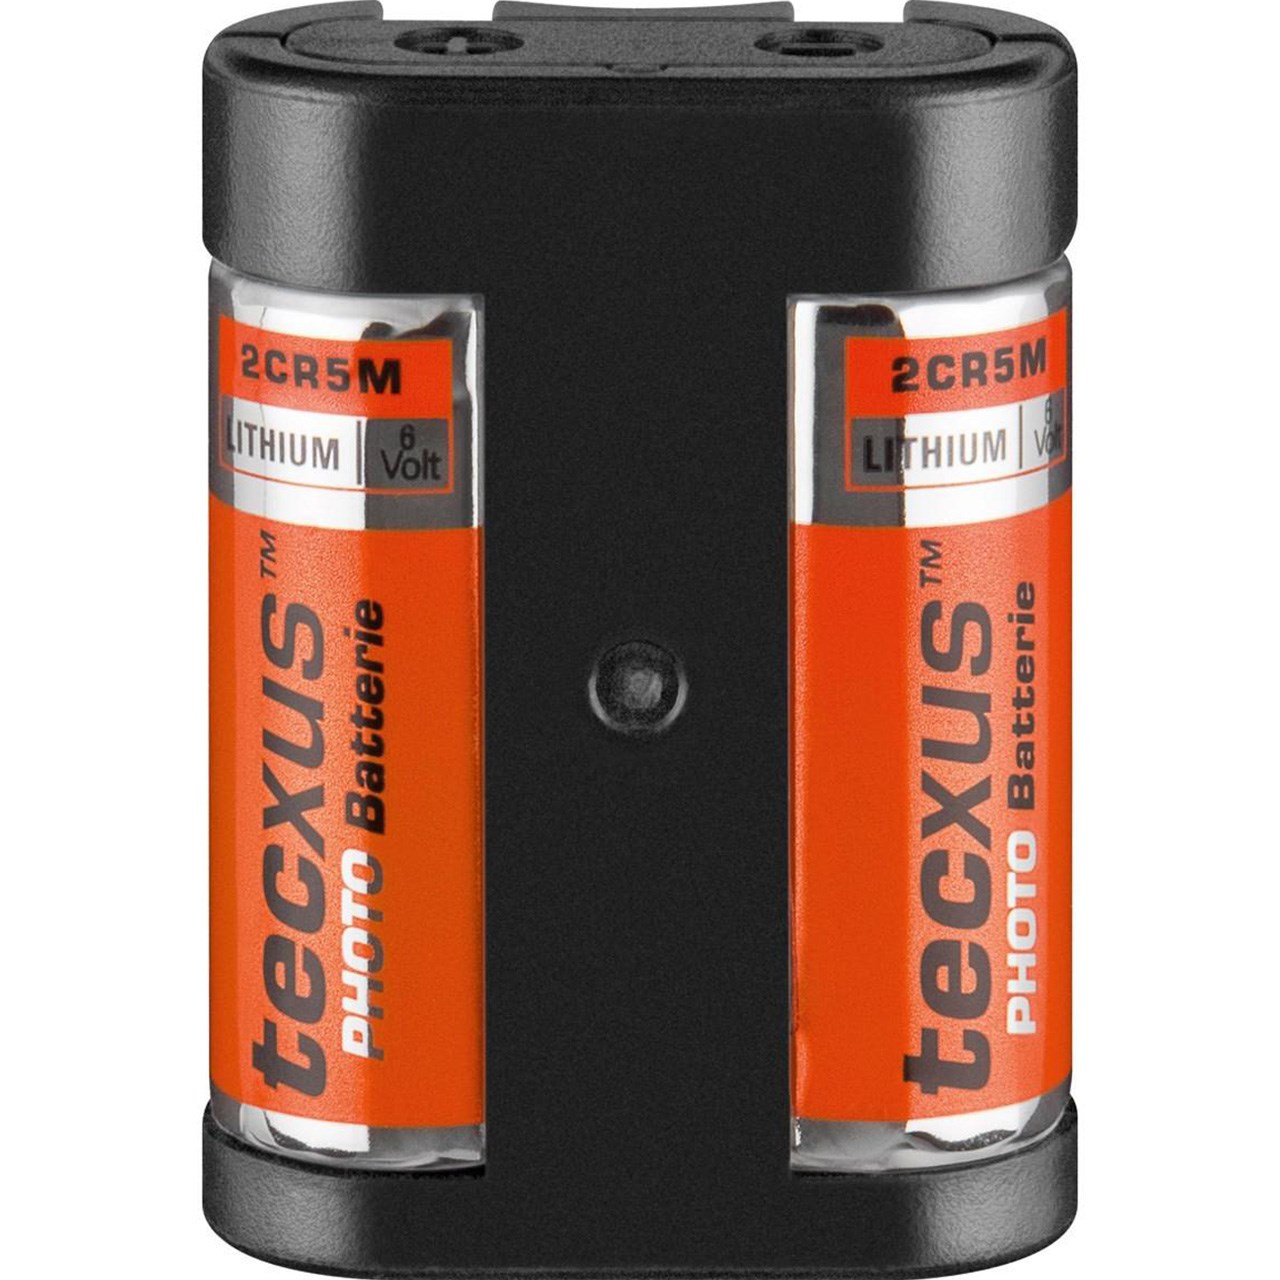 باتری 2CR5M تکساس مدل Photo Batteries